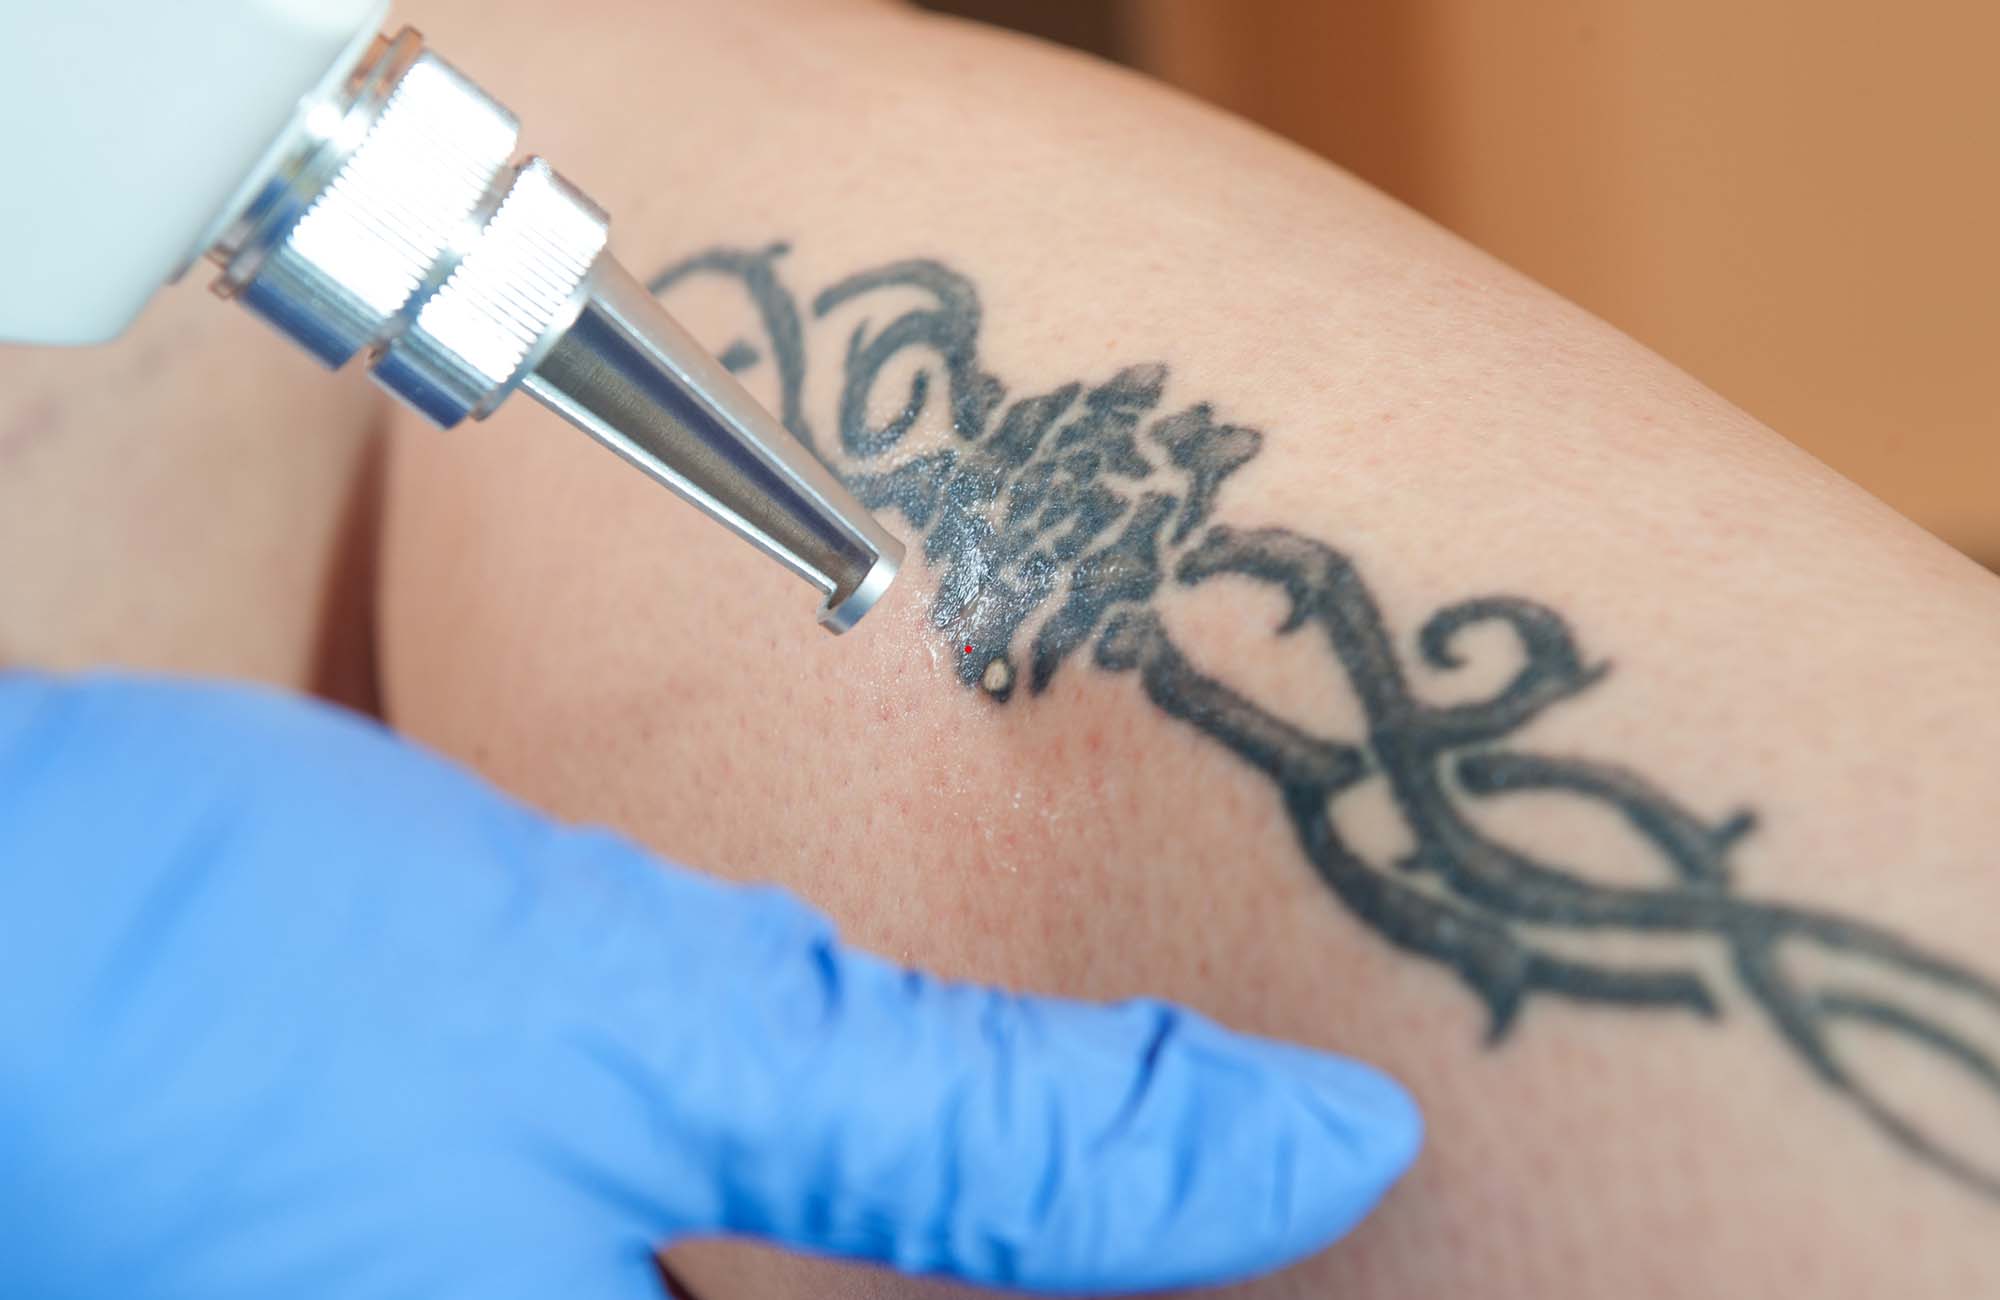 Tattoo removal of leg tattoo